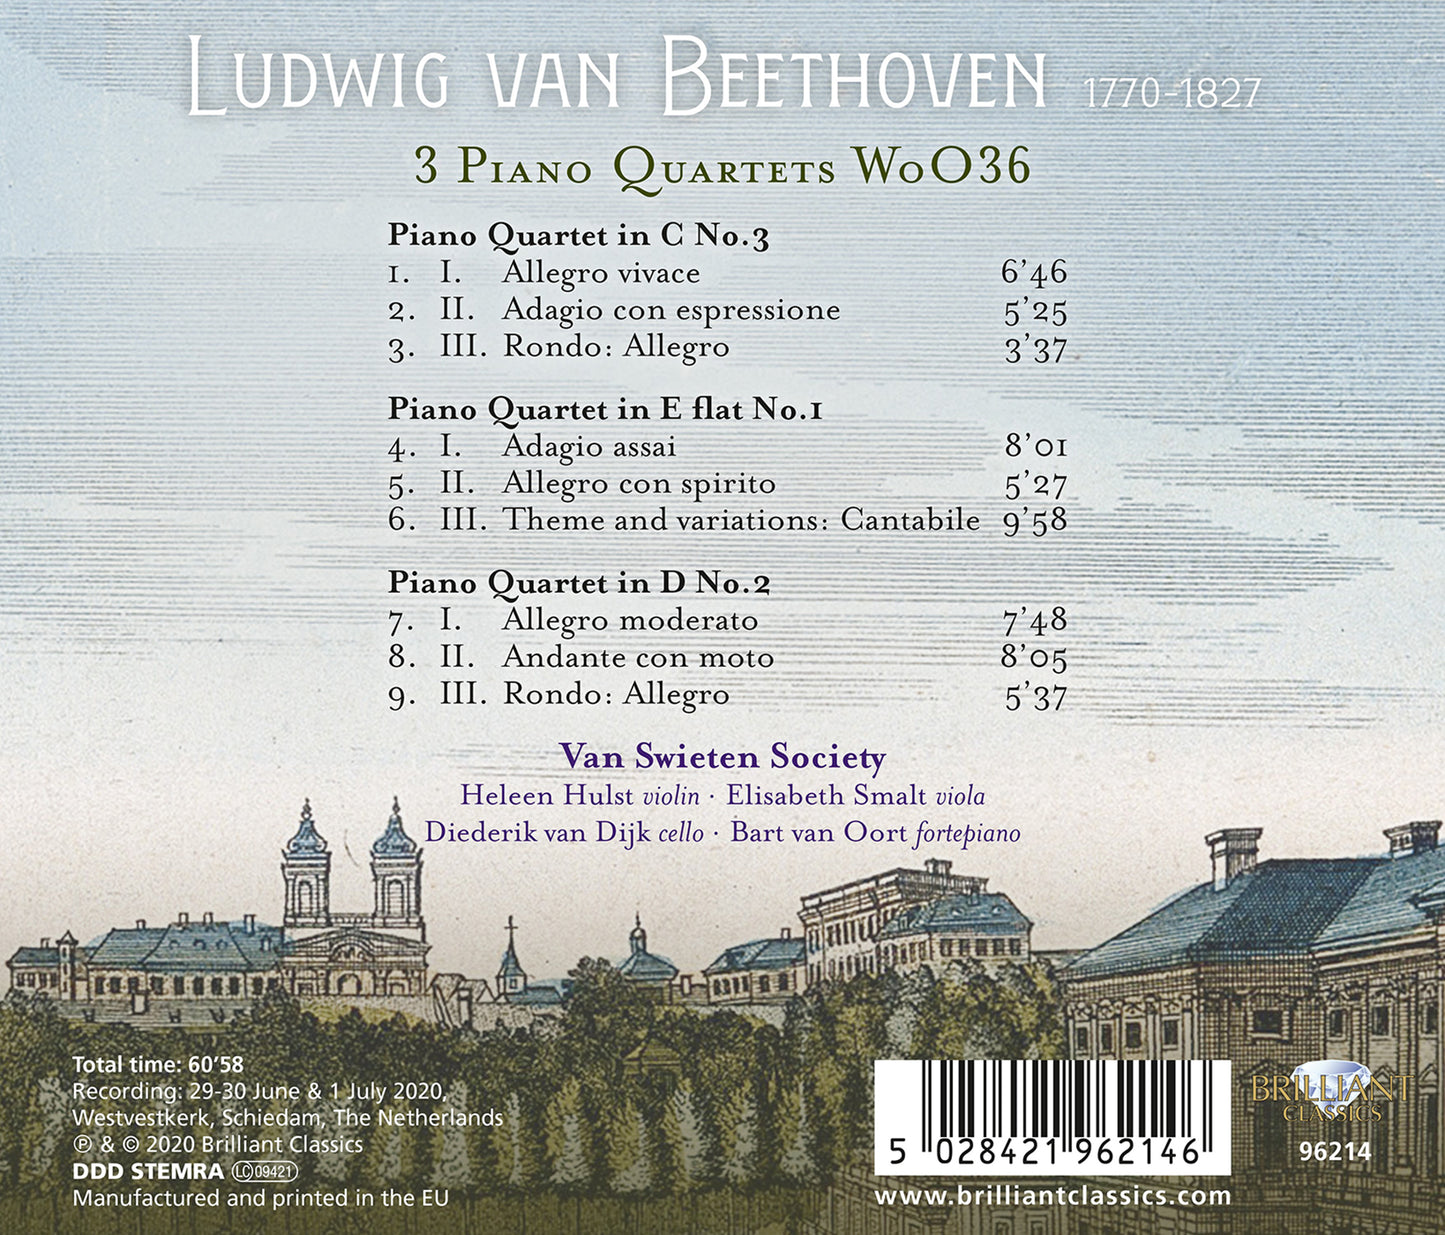 Beethoven: 3 Piano Quartets, Woo 36